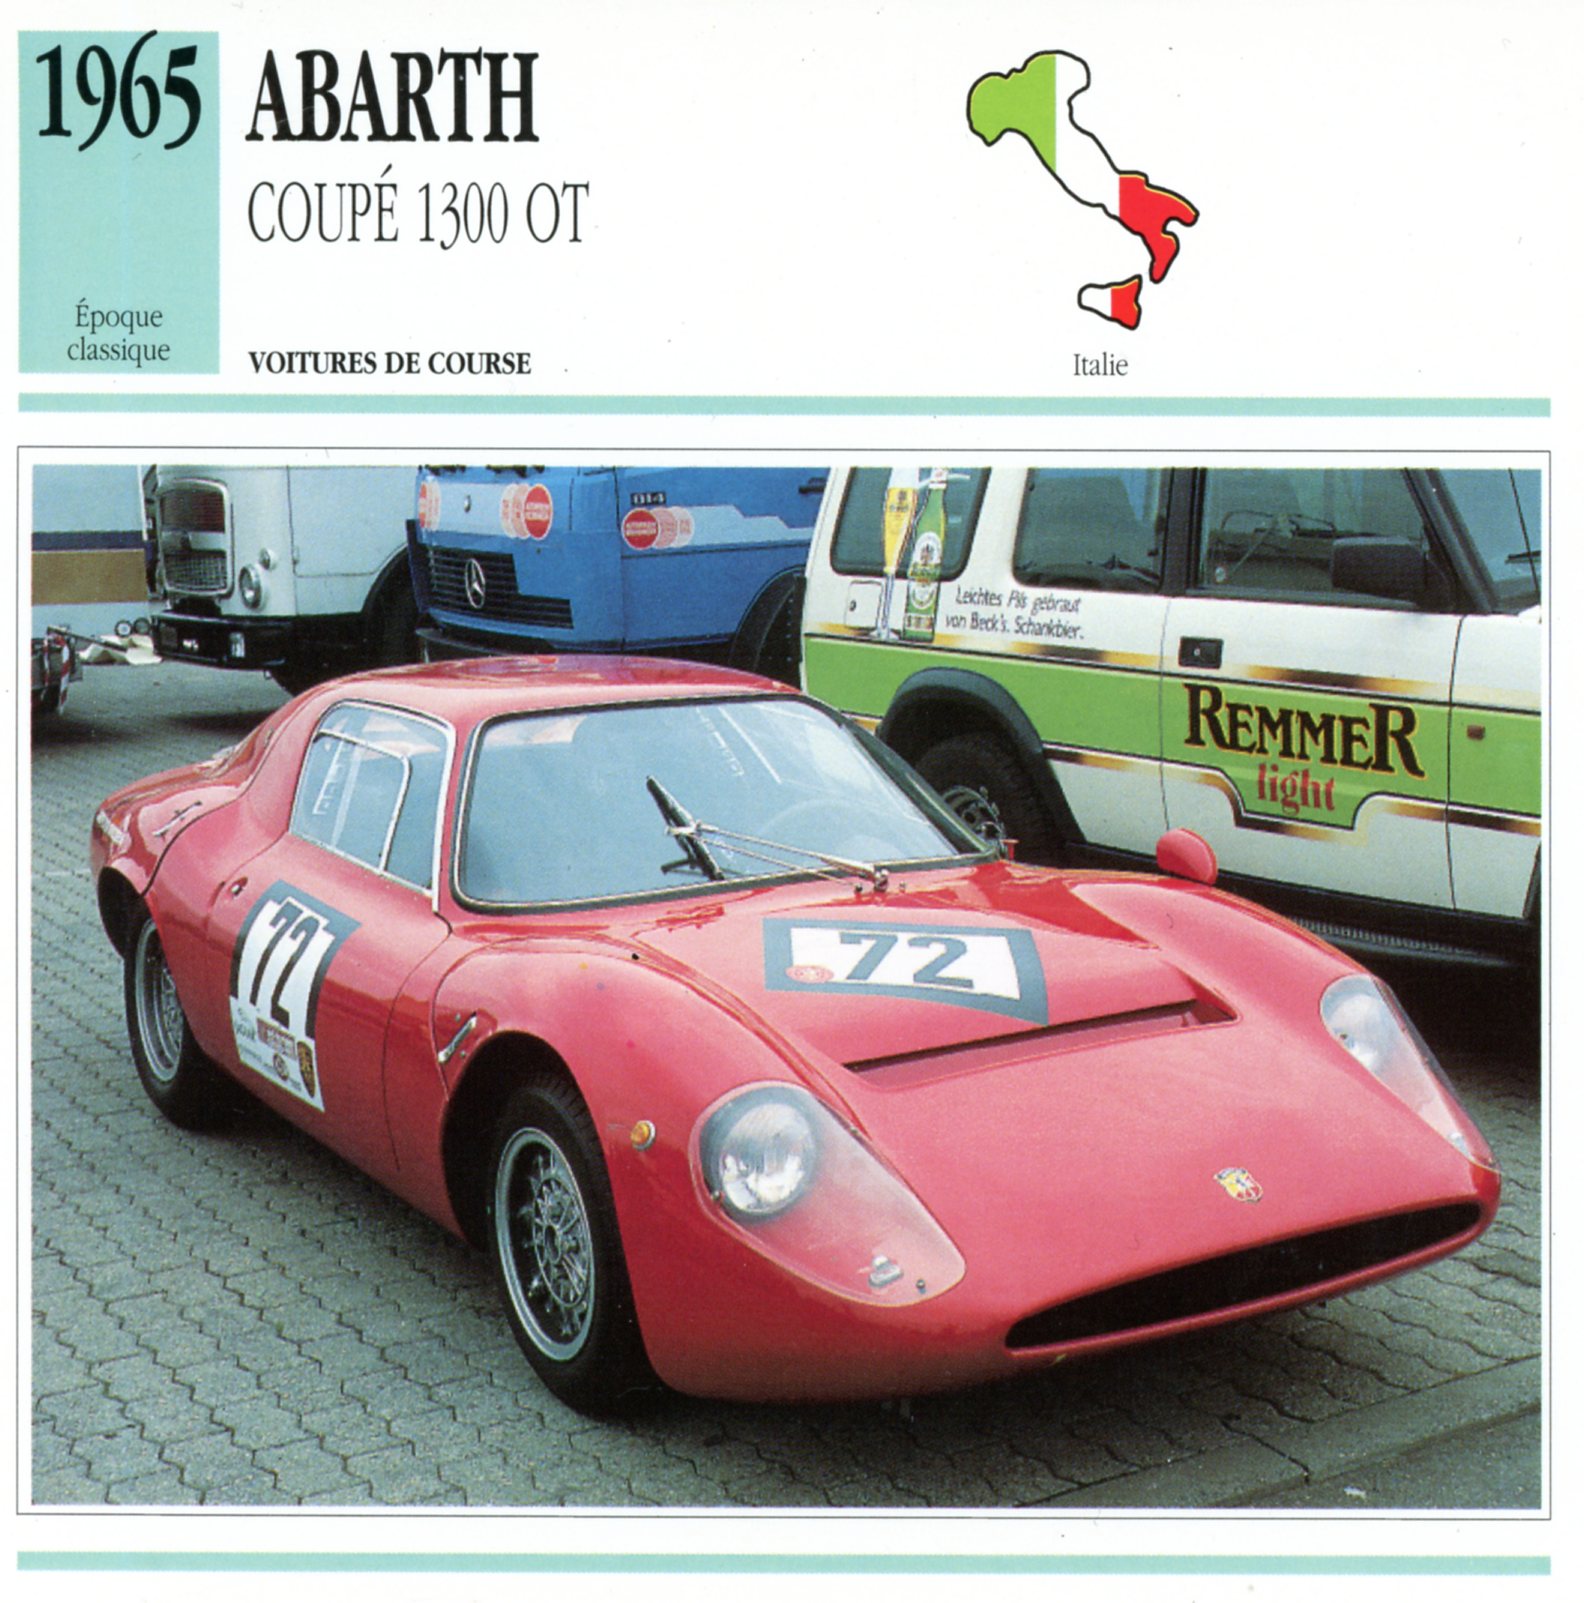 ABARTH COUPÉ 1300 OT 1965 - FICHE AUTO CARACTÉRISTIQUES